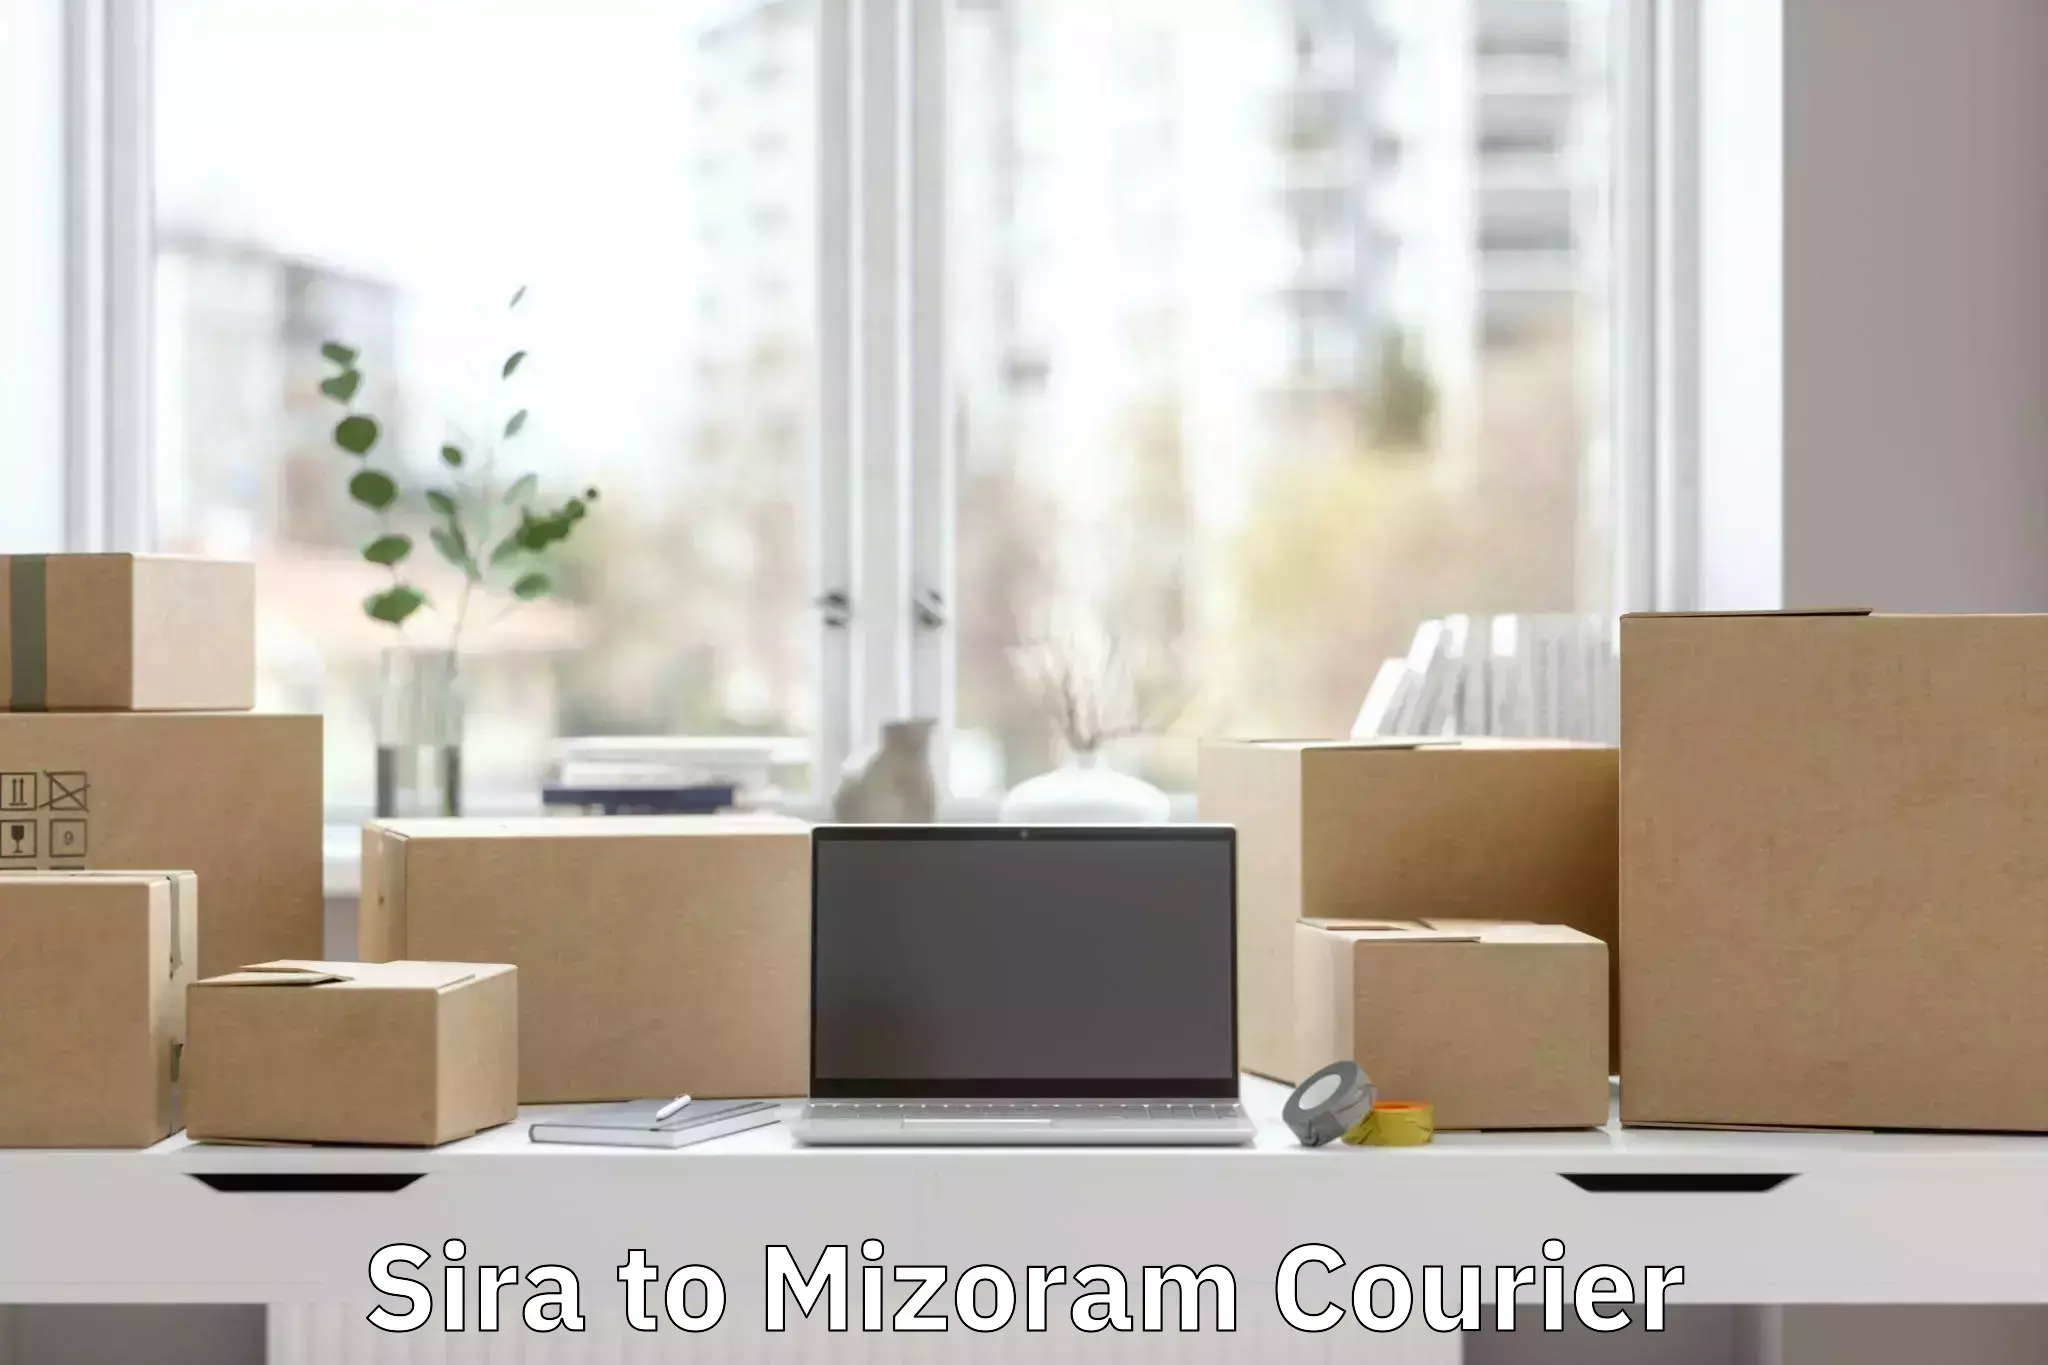 Luggage transfer service Sira to Mizoram